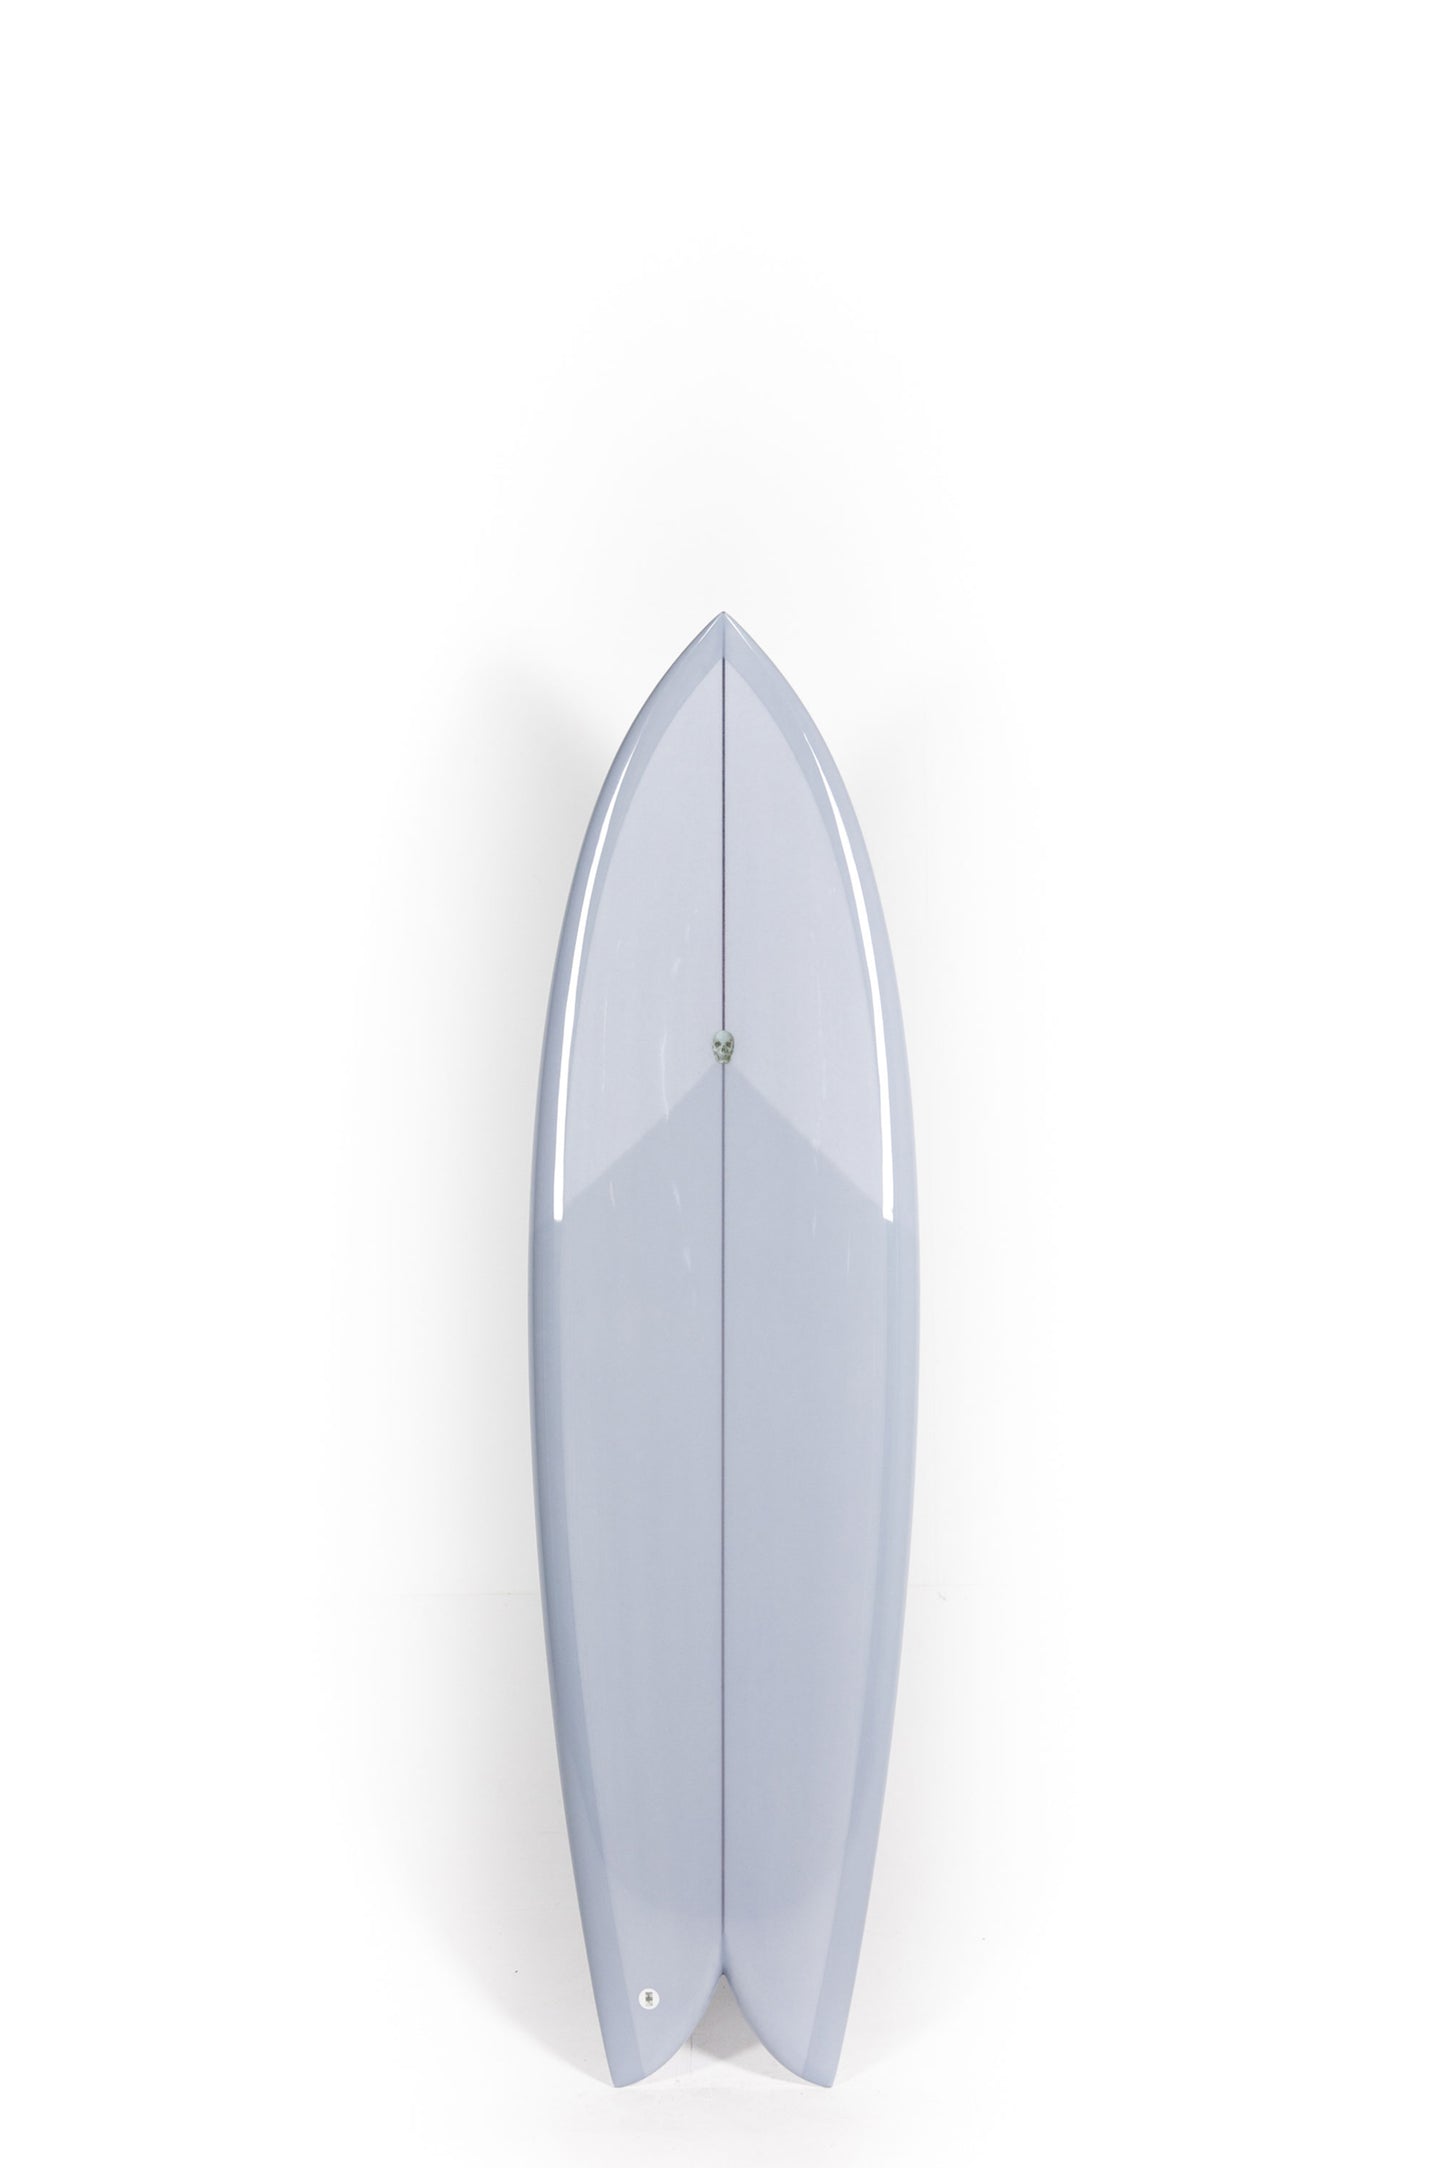 Pukas Surf Shop - Christenson Surfboards - LONG PHISH - 6'4" x 20 5/8 x 2 9/16 x 35.77L - CX05702